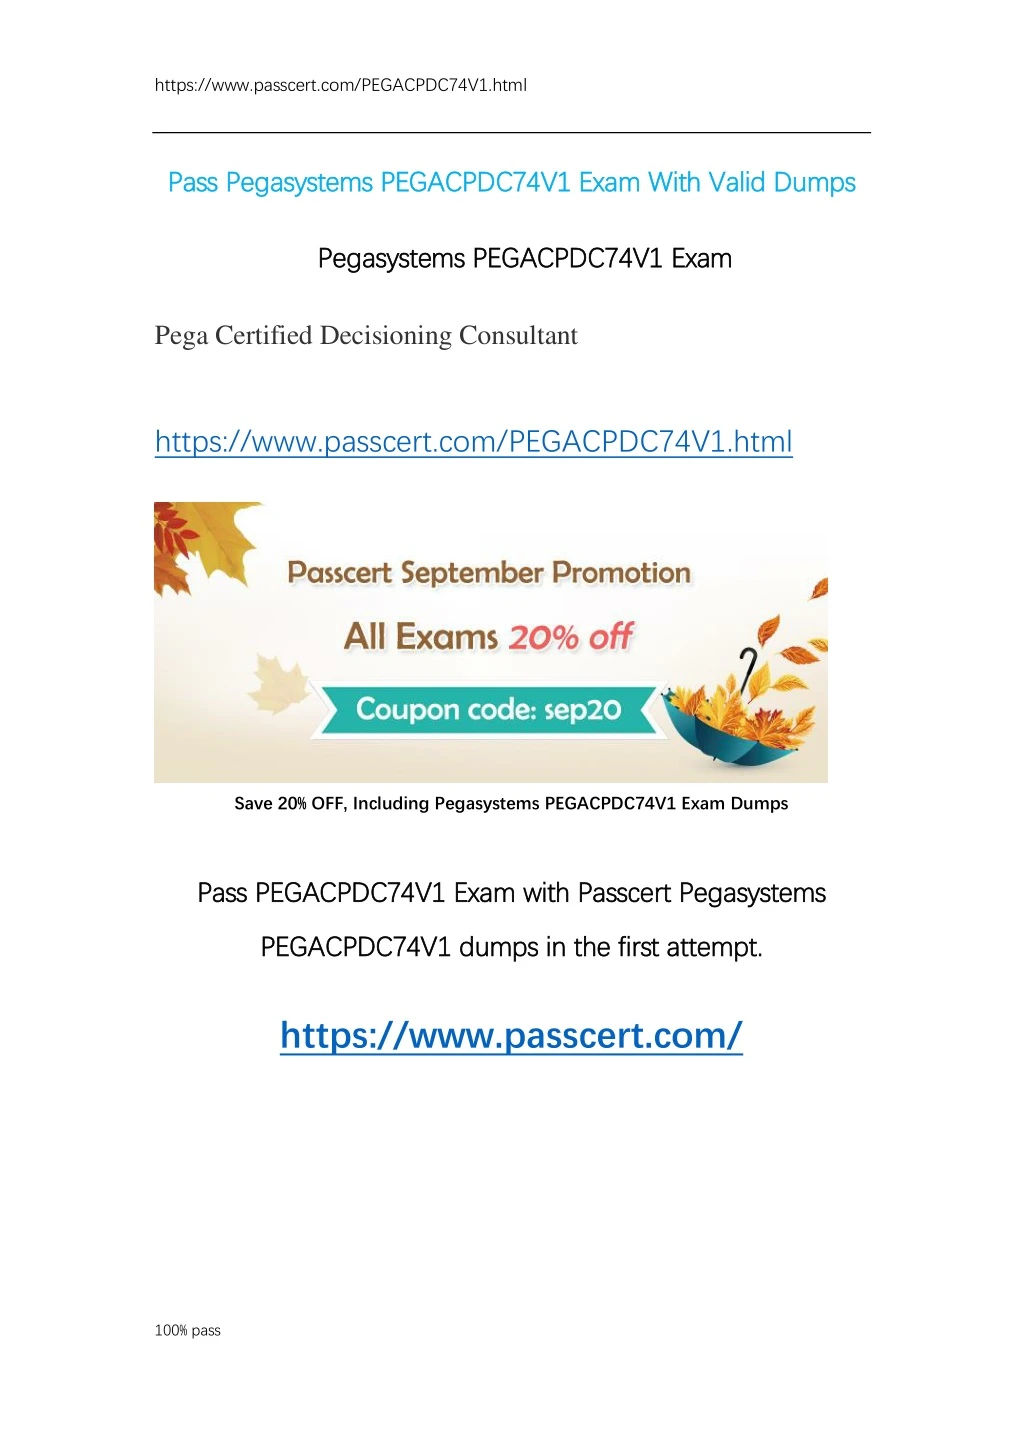 https www passcert com pegacpdc74v1 html